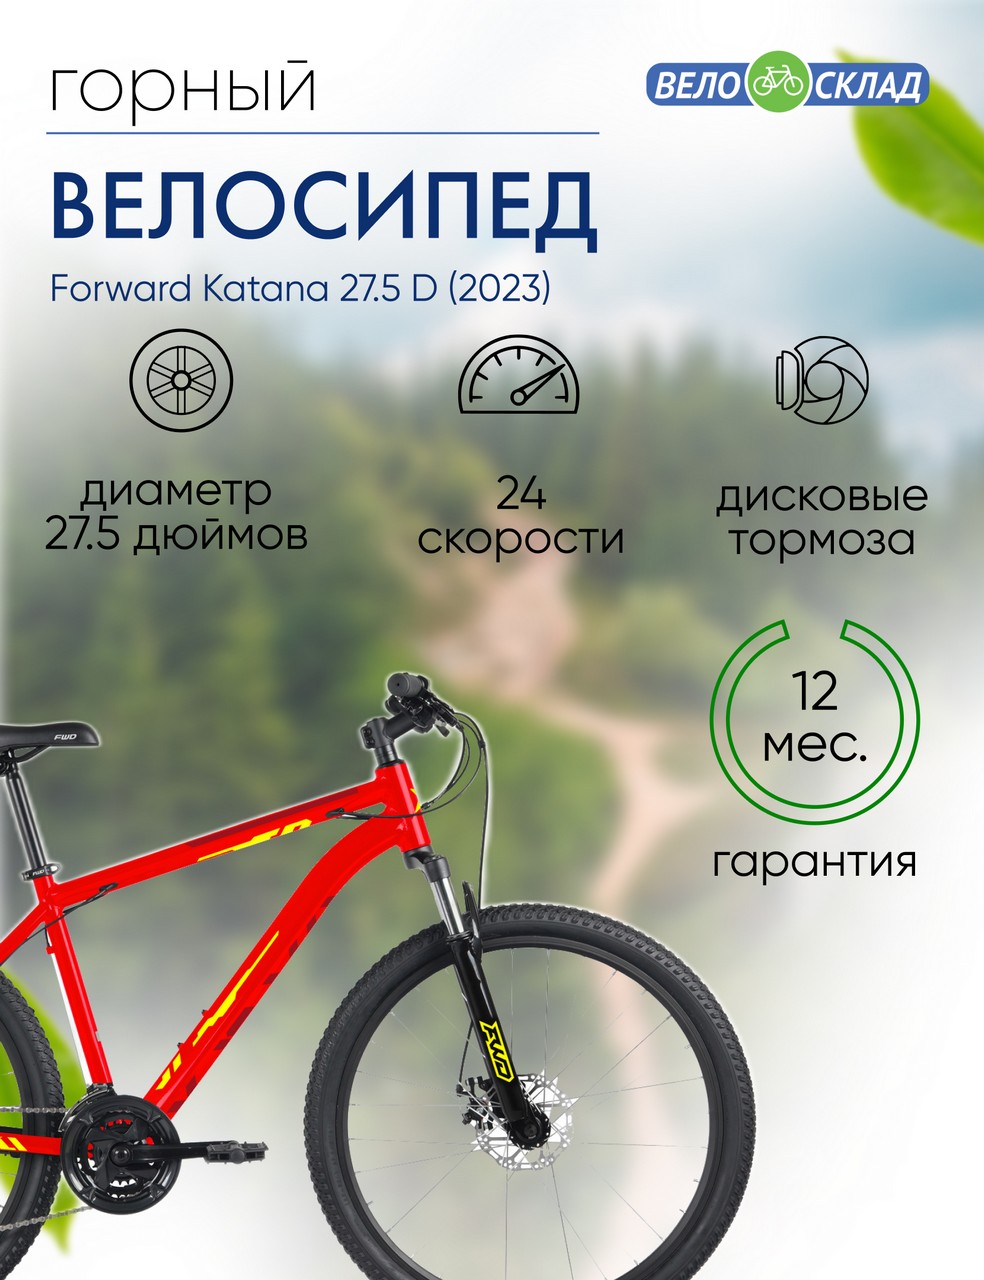 Горный велосипед Forward Katana 27.5 D, год 2023, цвет Красный-Желтый, ростовка 18